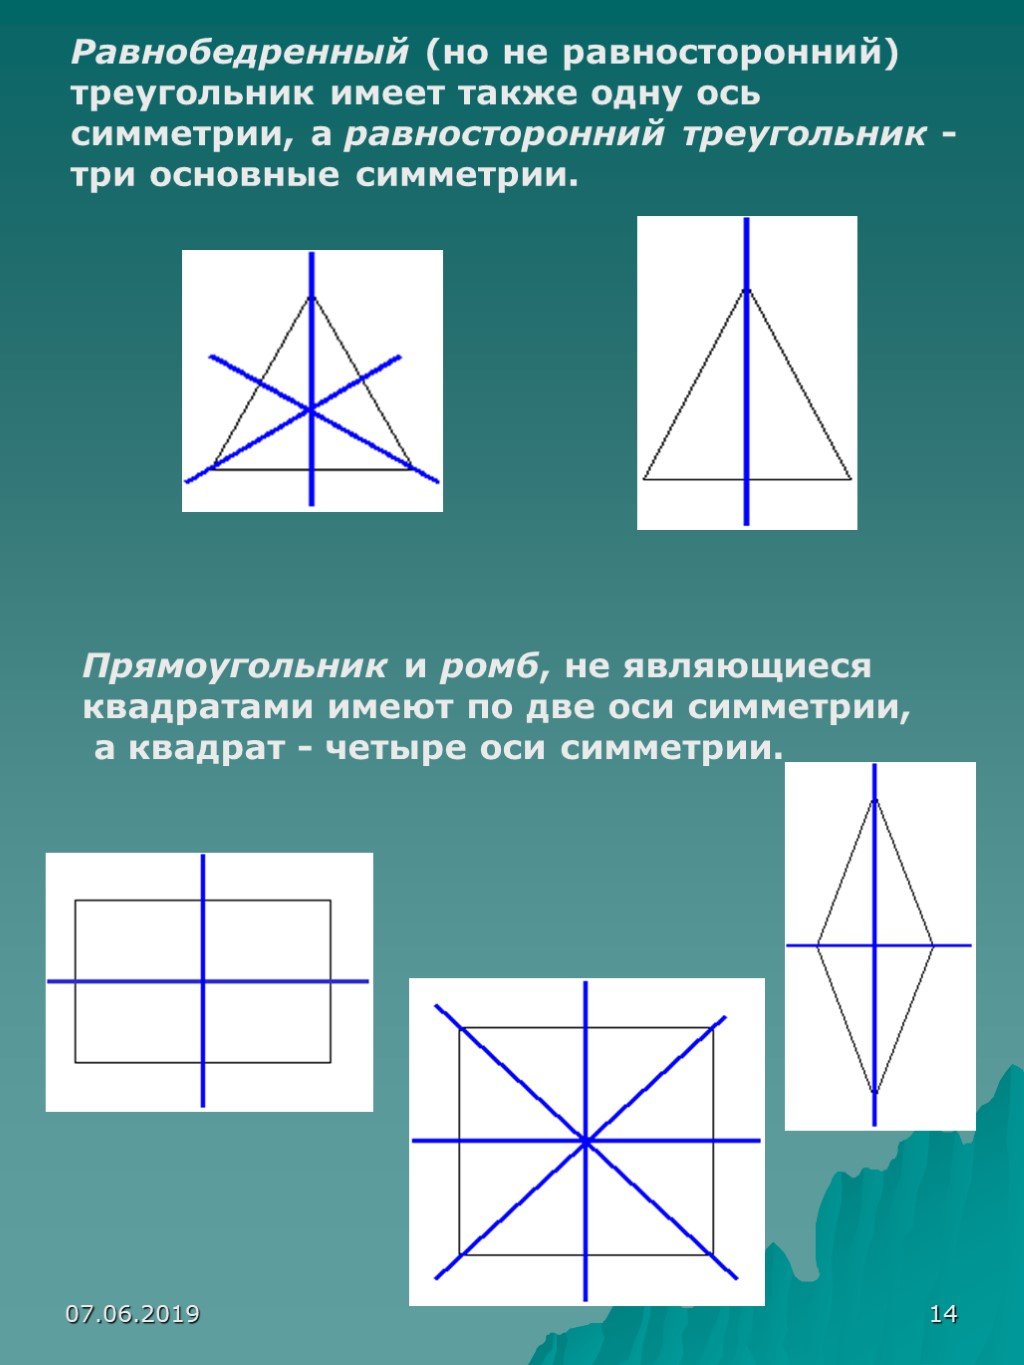 Равнобедренный треугольник имеет три оси симметрии верно. Оси симметрии квадрата. ОСБ симметрии в треугольнике. ОСТ симетрии треугольника. ОСТ стмметрии у прямоугольник.